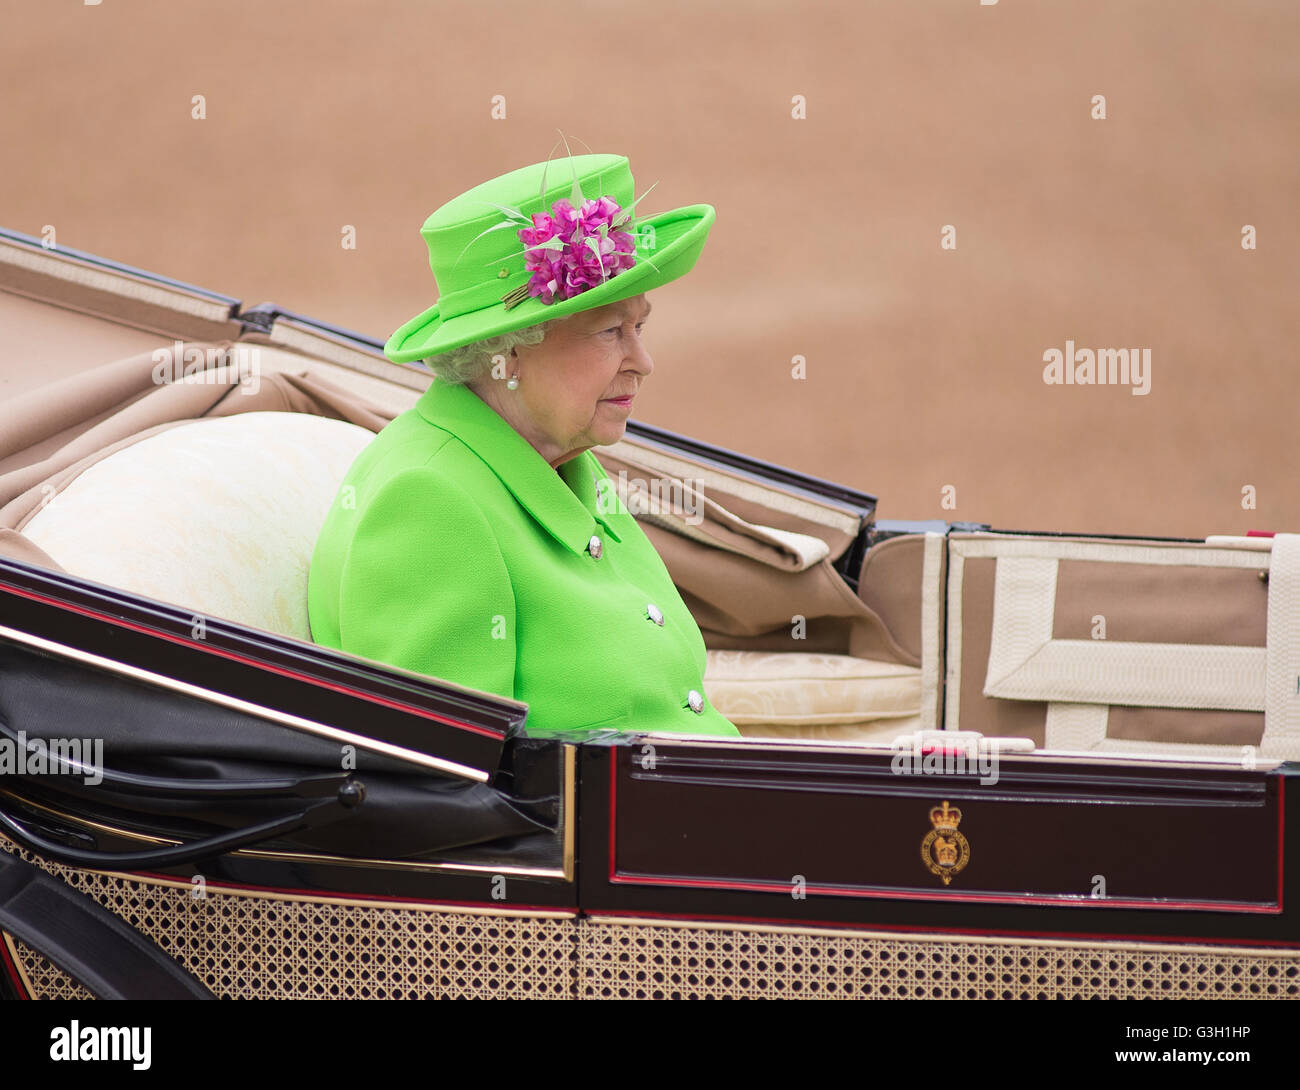 Horse Guards Parade, Londres, Royaume-Uni. 11 juin 2016. La reine Elizabeth II inspecte les troupes lors de l'inspection de la ligne lors du défilé de la couleur lors de son 90e anniversaire. Crédit : Malcolm Park/Alay Live News. Banque D'Images